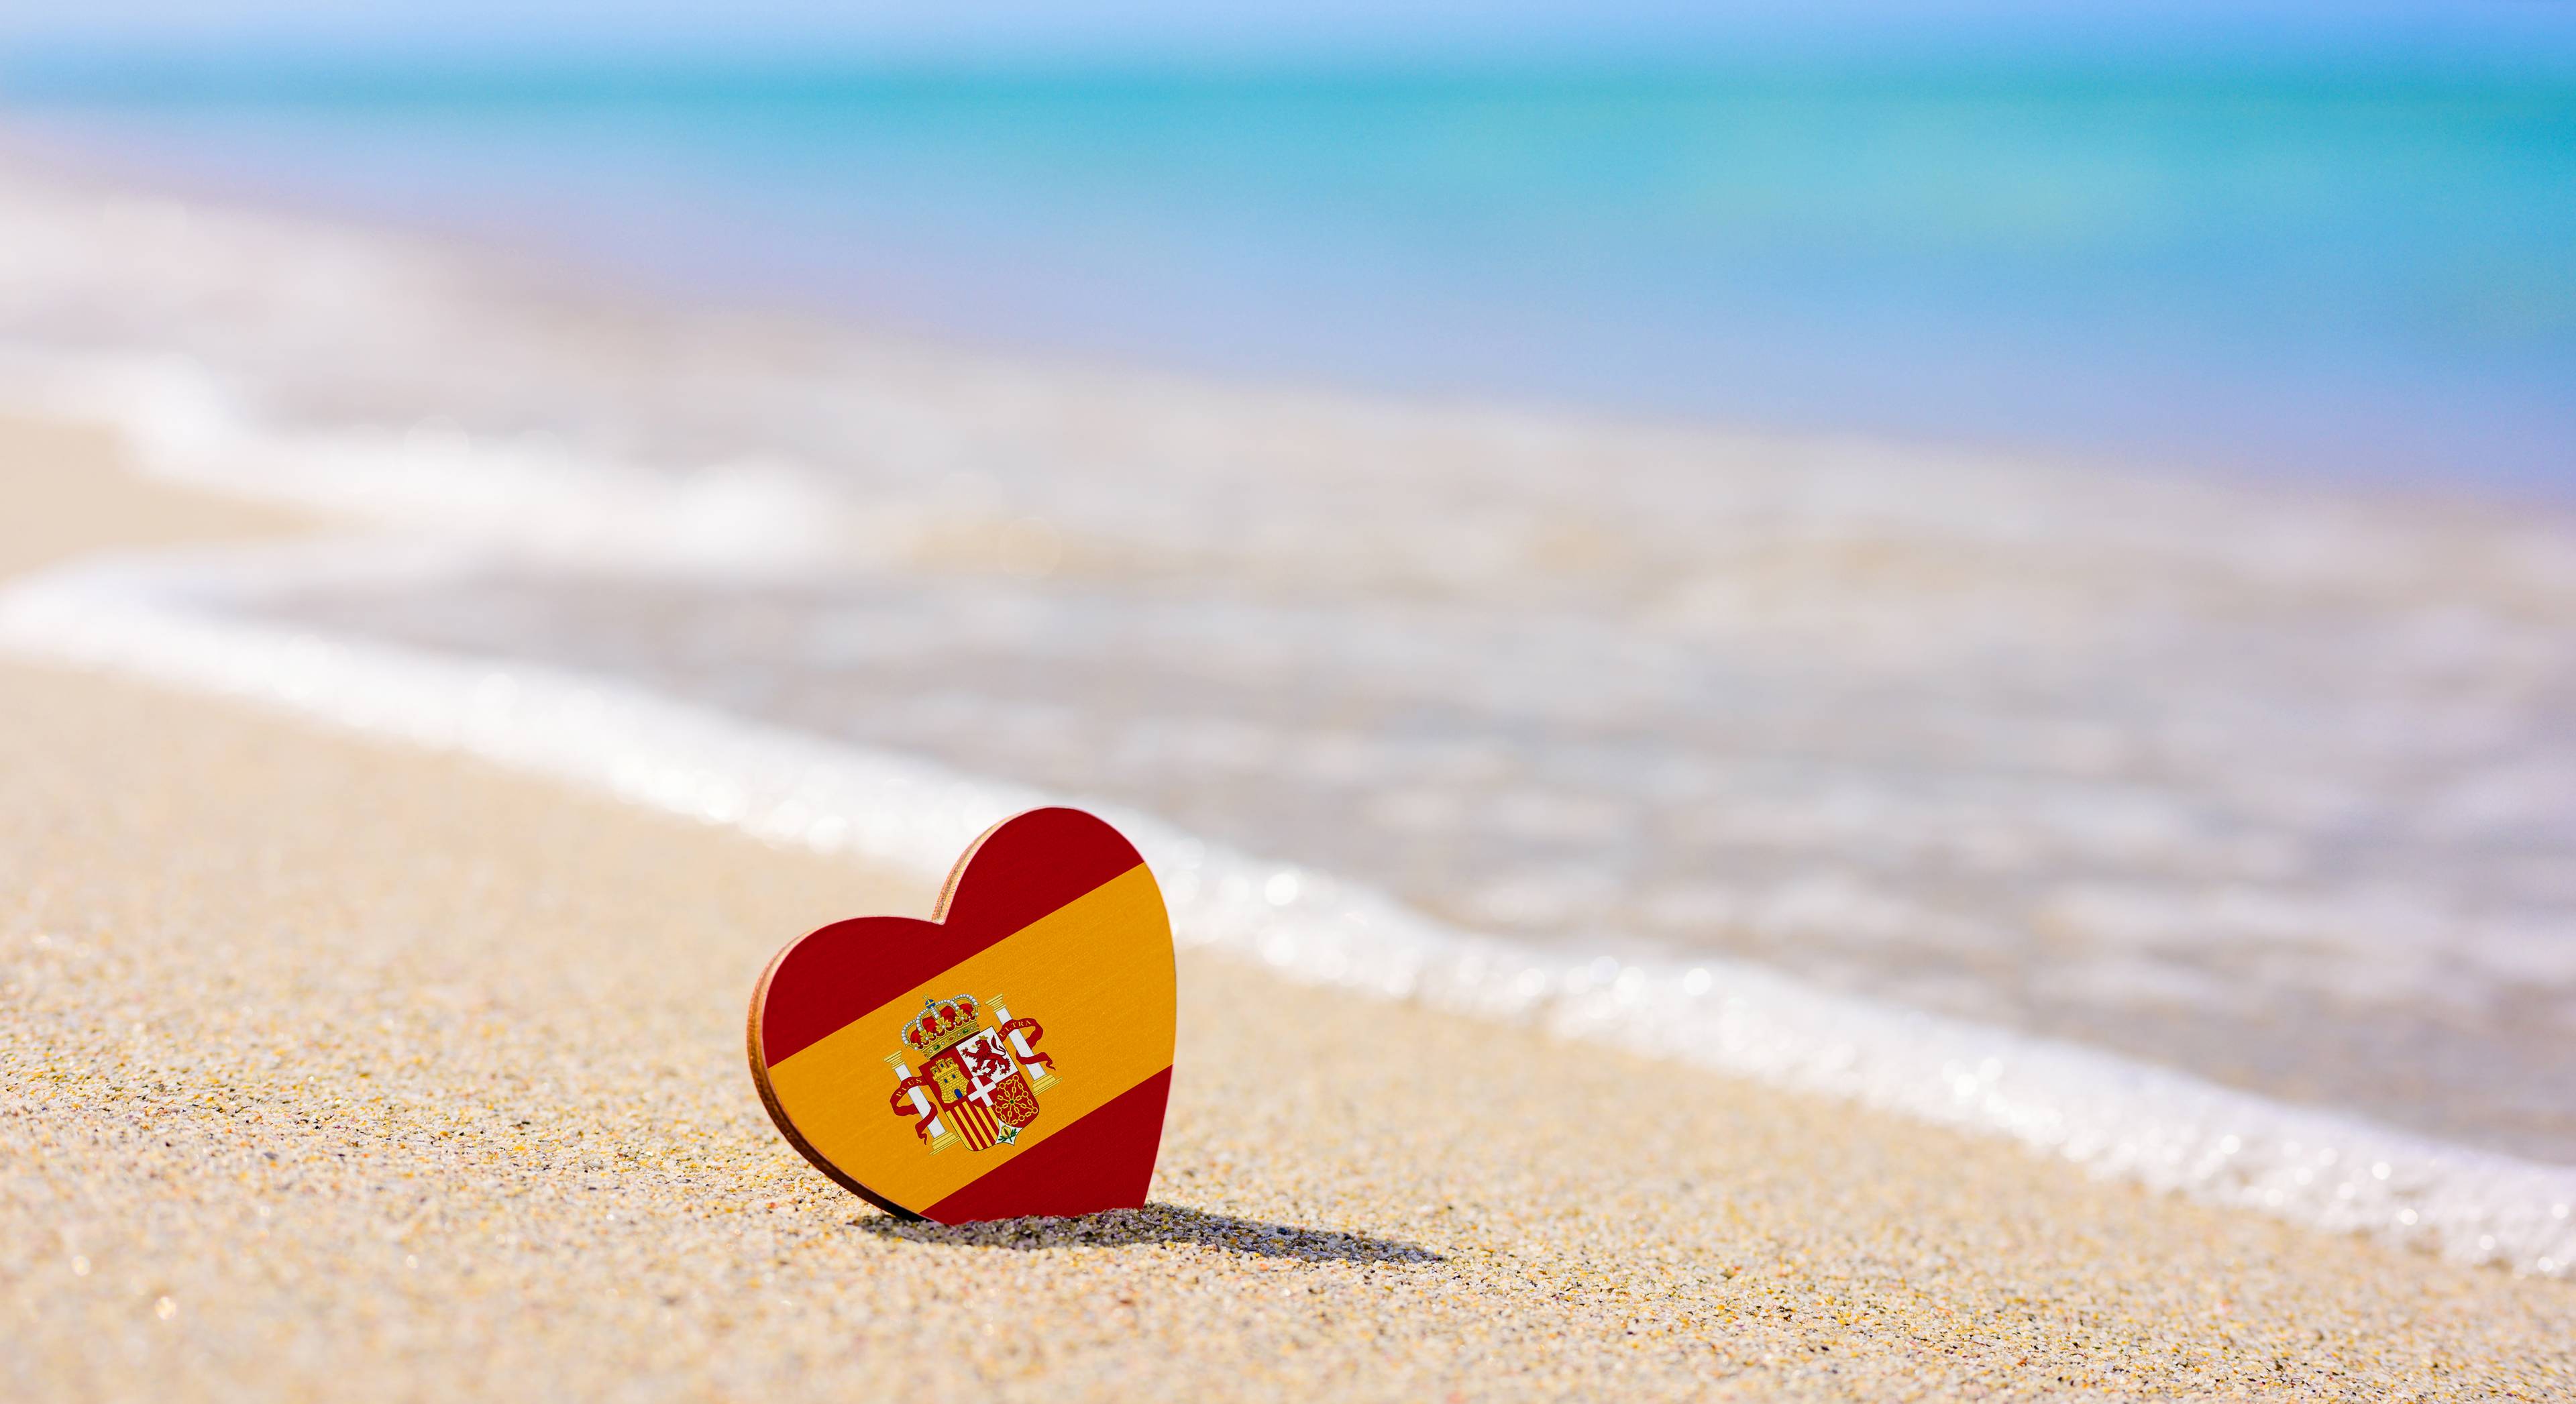 cuore con bandiera spagnola sulla sabbia in spiaggia con mare sullo sfondo